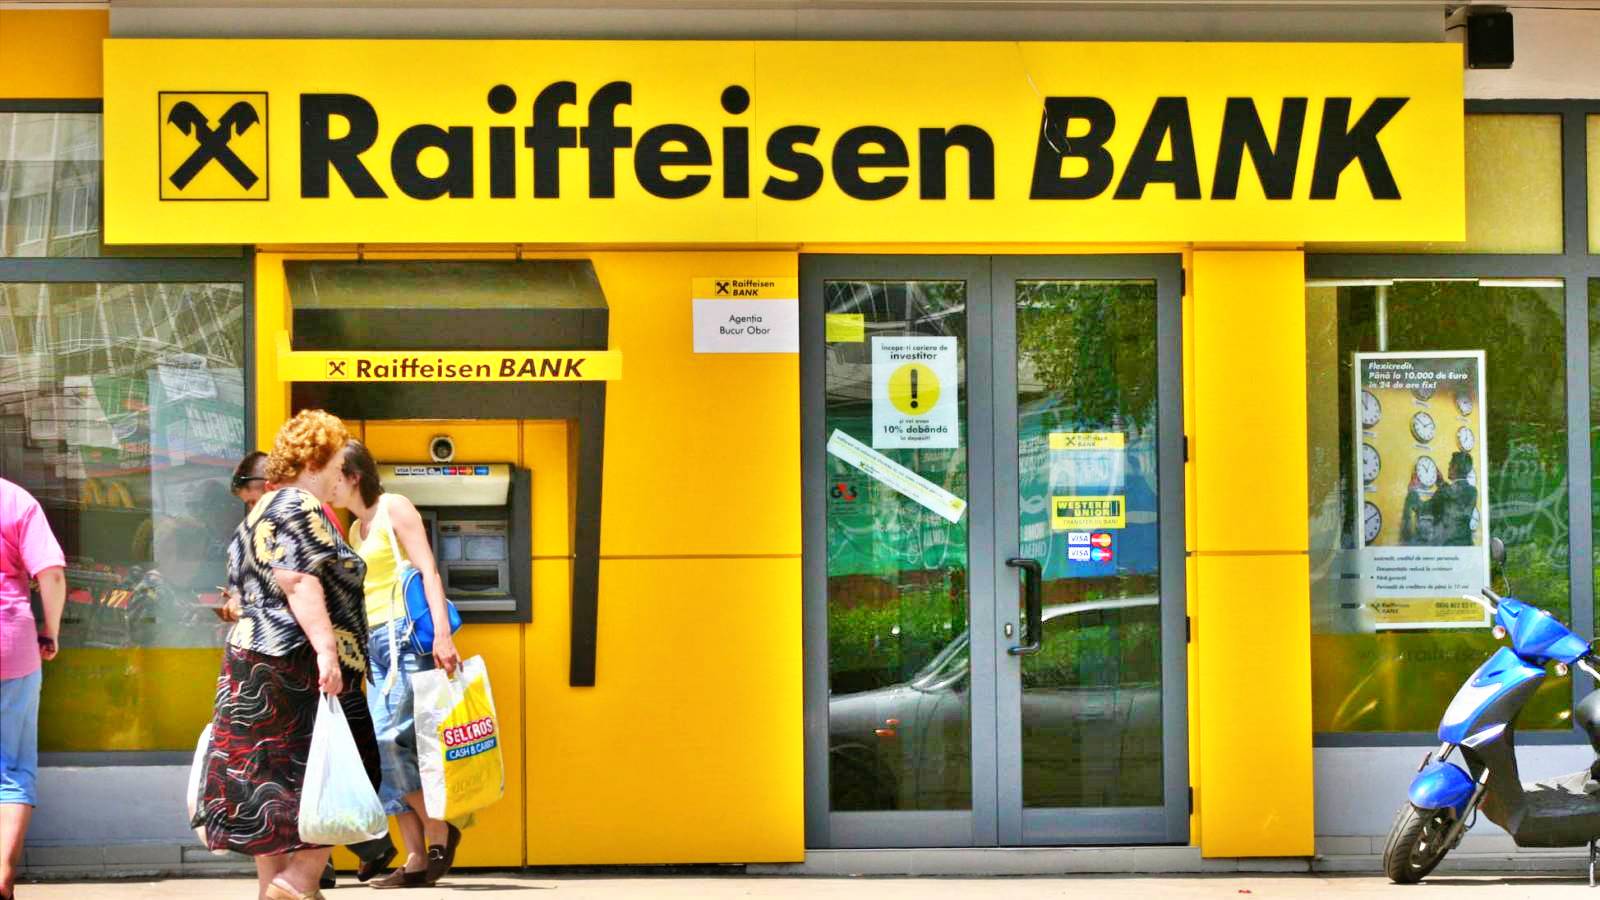 Raiffeisen Bank LAST MINUTE Officiële bepalingen zijn van invloed op veel Roemeense klanten